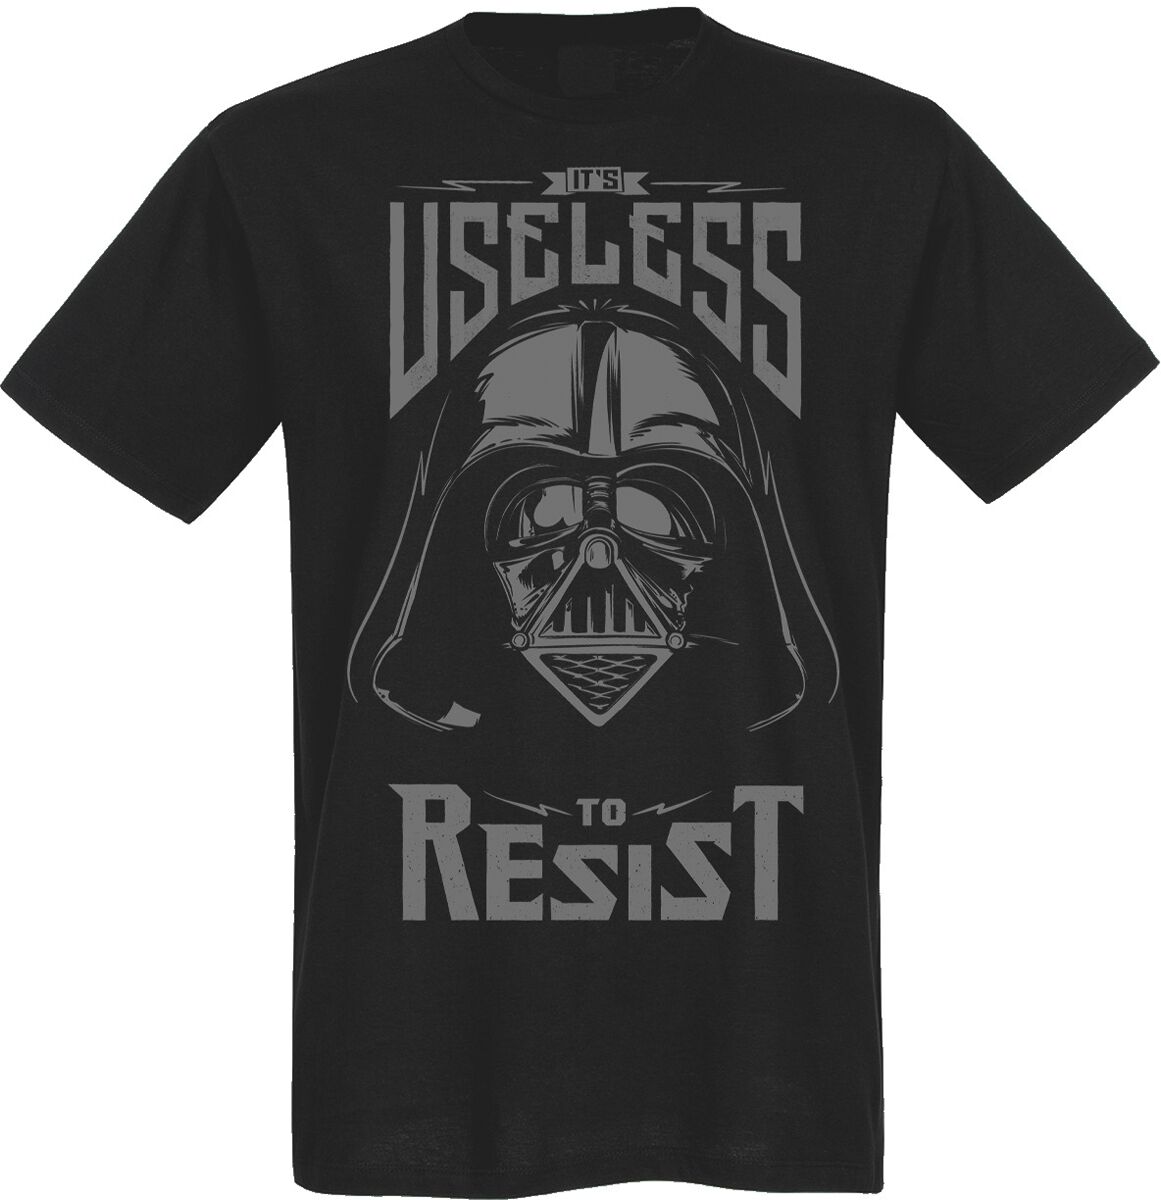 Star Wars - Disney T-Shirt - Useless To Resist - M bis 5XL - für Männer - Größe 3XL - schwarz  - Lizenzierter Fanartikel